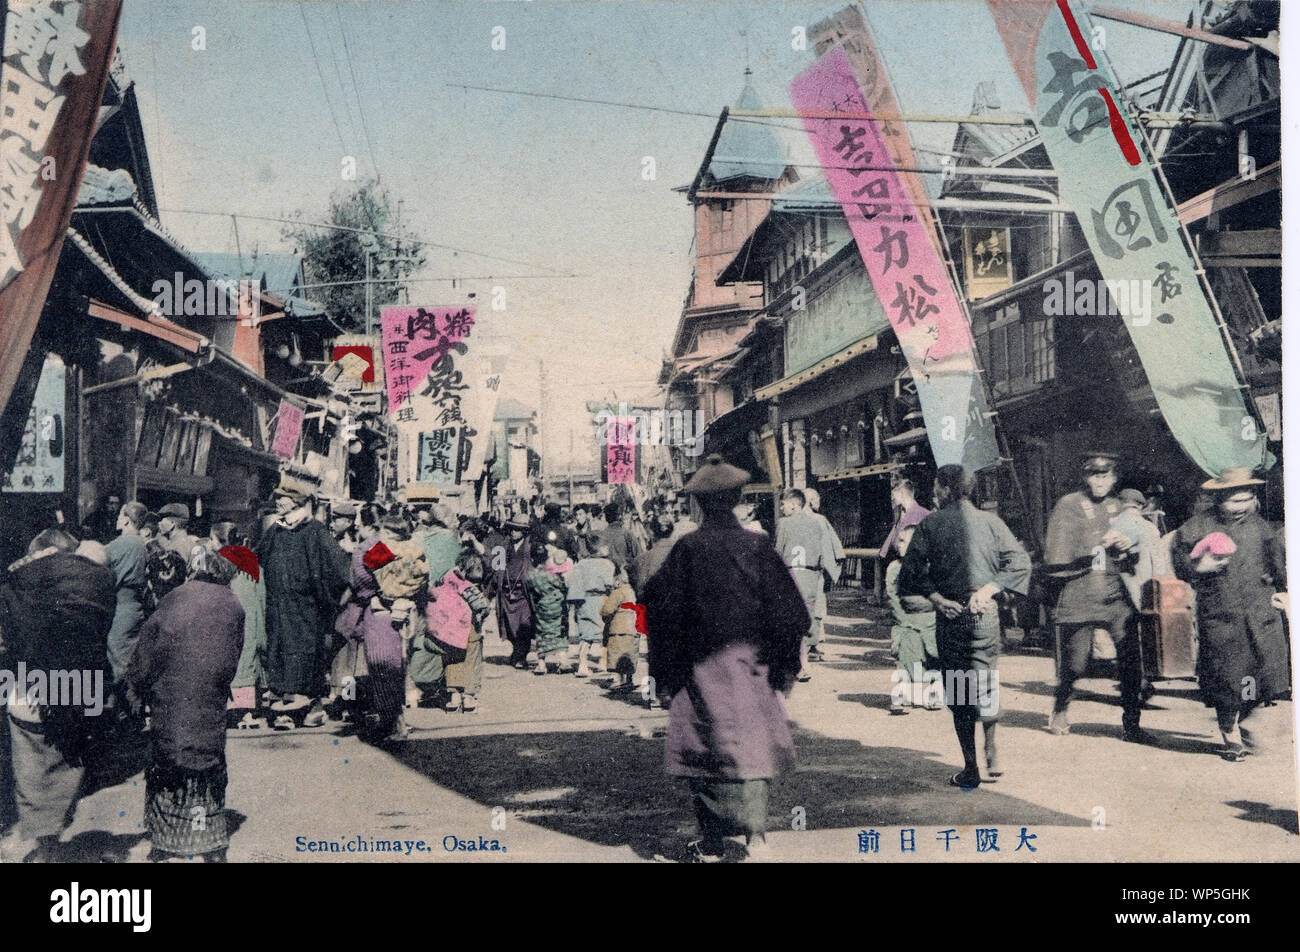 [1910s Japan - Sennichimae Entertainment District in Osaka] - Menschen unter flags Spaziergang bei Sennichimae, Osaka. Zusammen mit Dotonbori, Sennichimae war Osaka's Main Entertainment Bereich seit der Edo-Zeit (1603-1868). 20. jahrhundert alte Ansichtskarte. Stockfoto